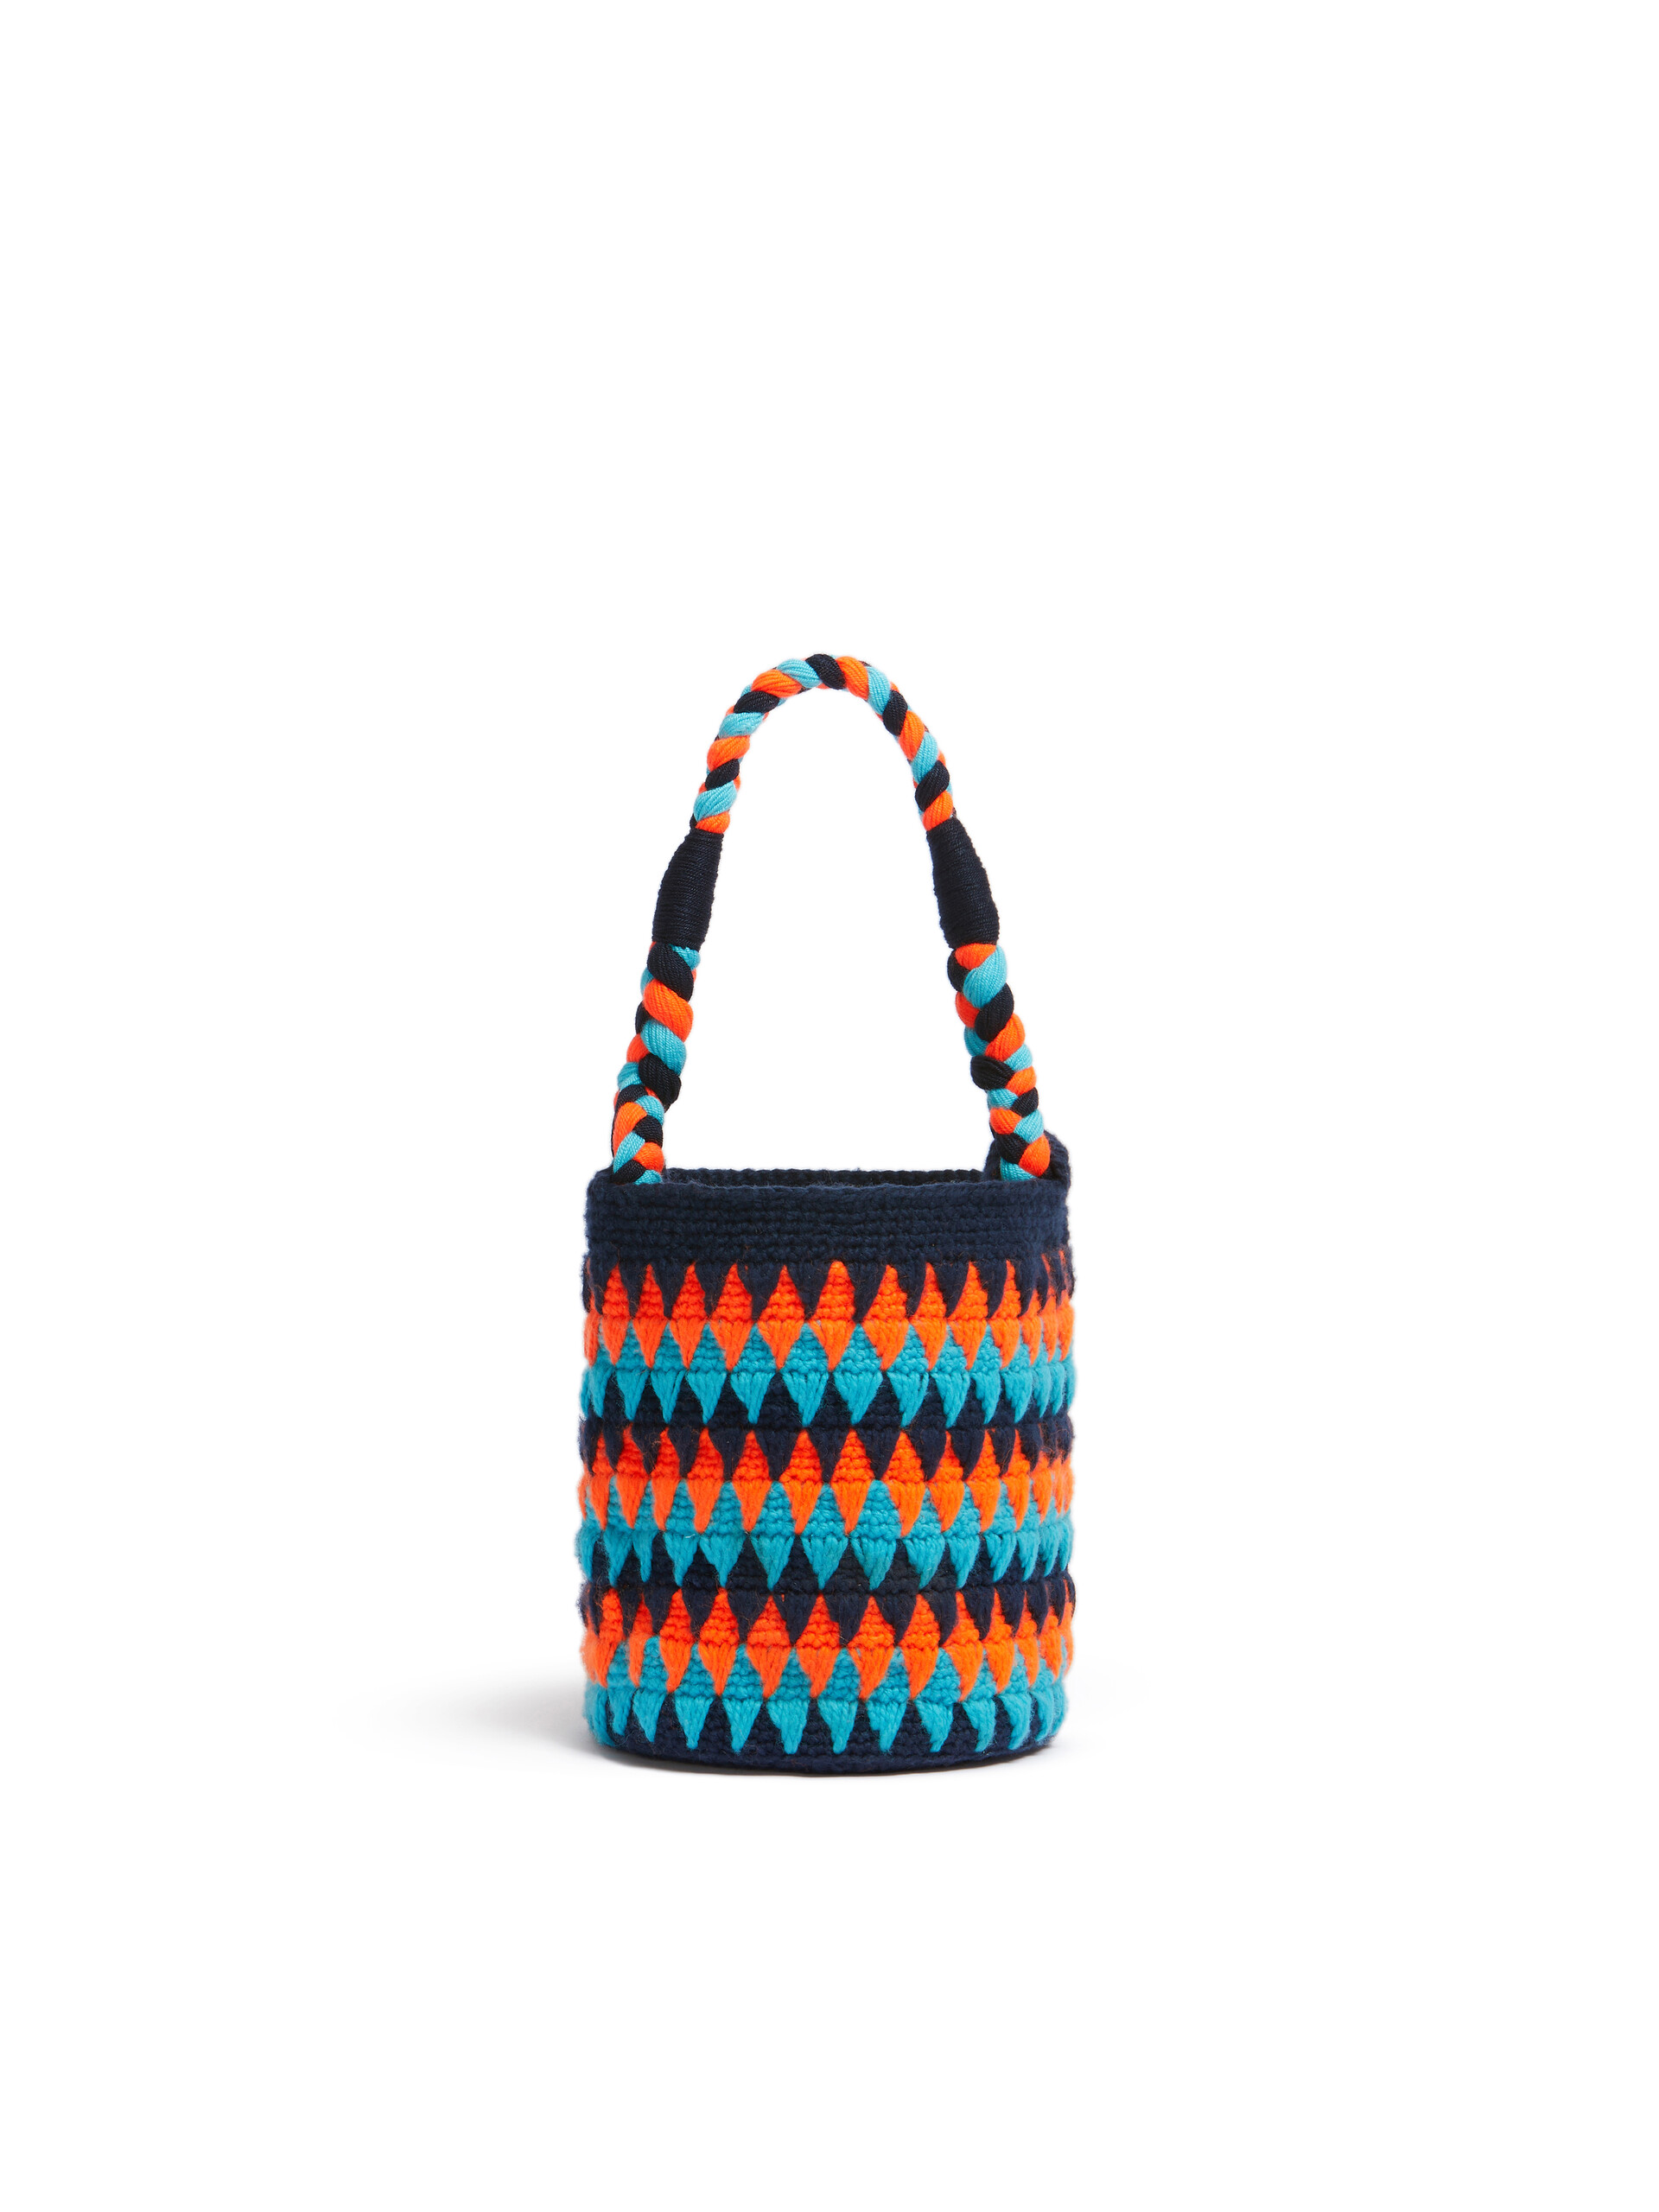 Sac Marni Market Chessboard orange et bleu réalisé au crochet - Sacs cabas - Image 3